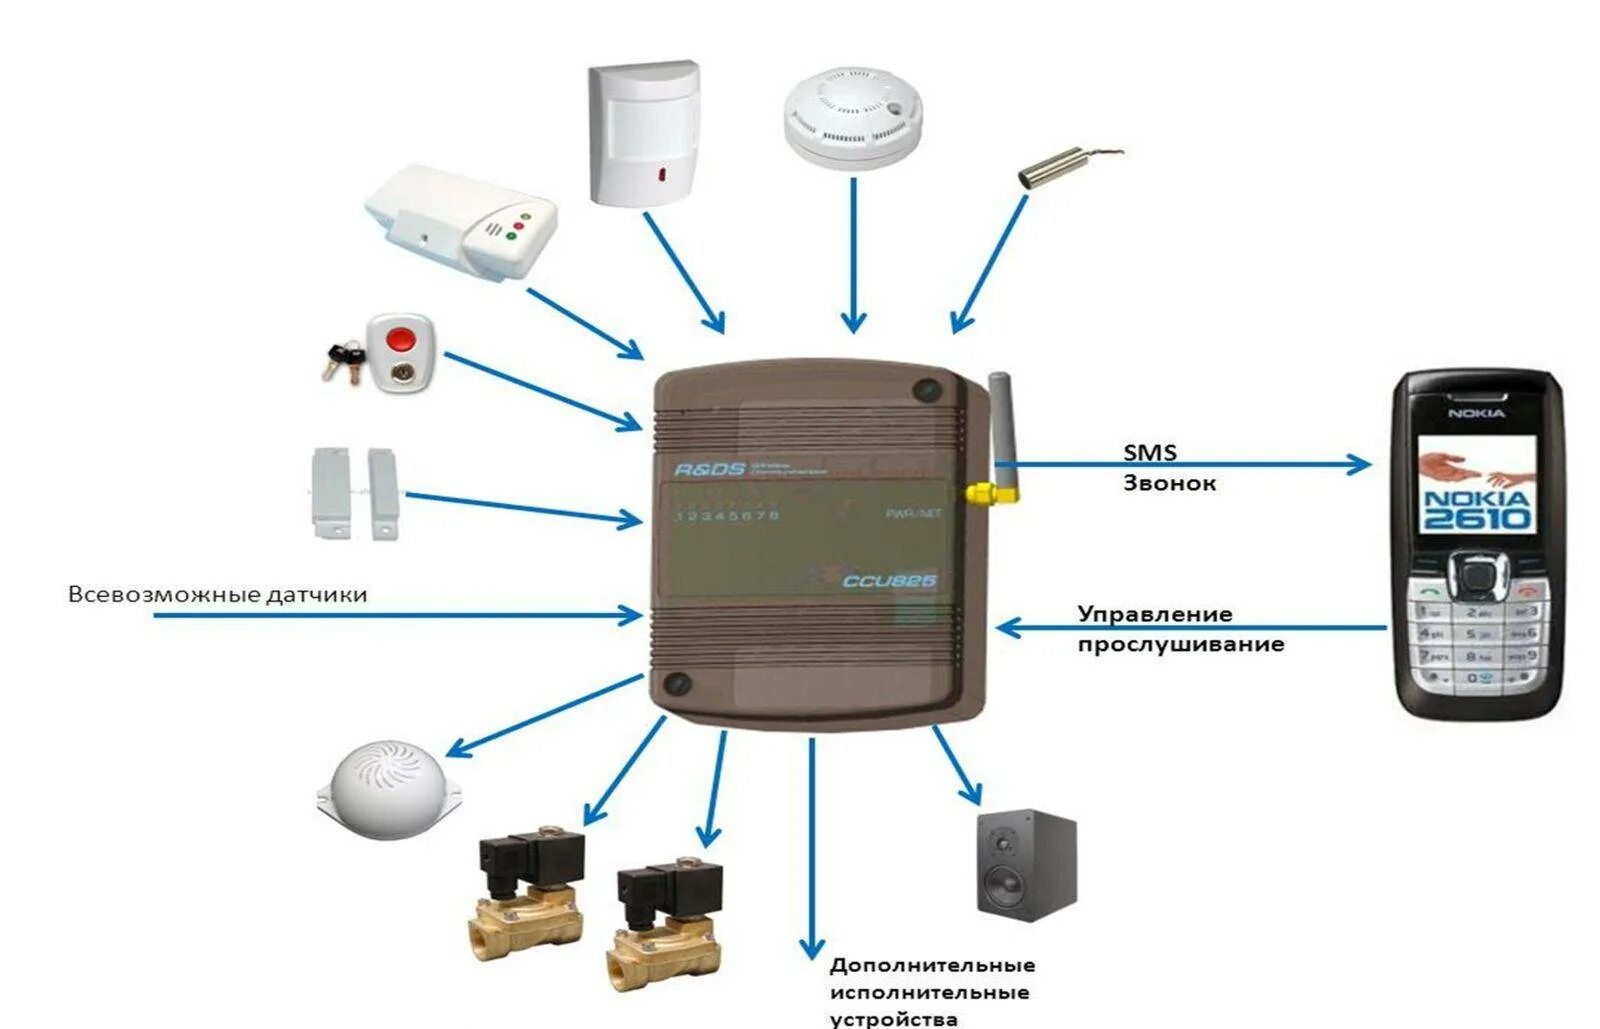 Как работает gsm. Схема охранной сигнализации с GSM датчиком. GSM модуль для сигнализации. Автономная охранная сигнализация GSM. Схема работы автономная охранная сигнализация GSM.